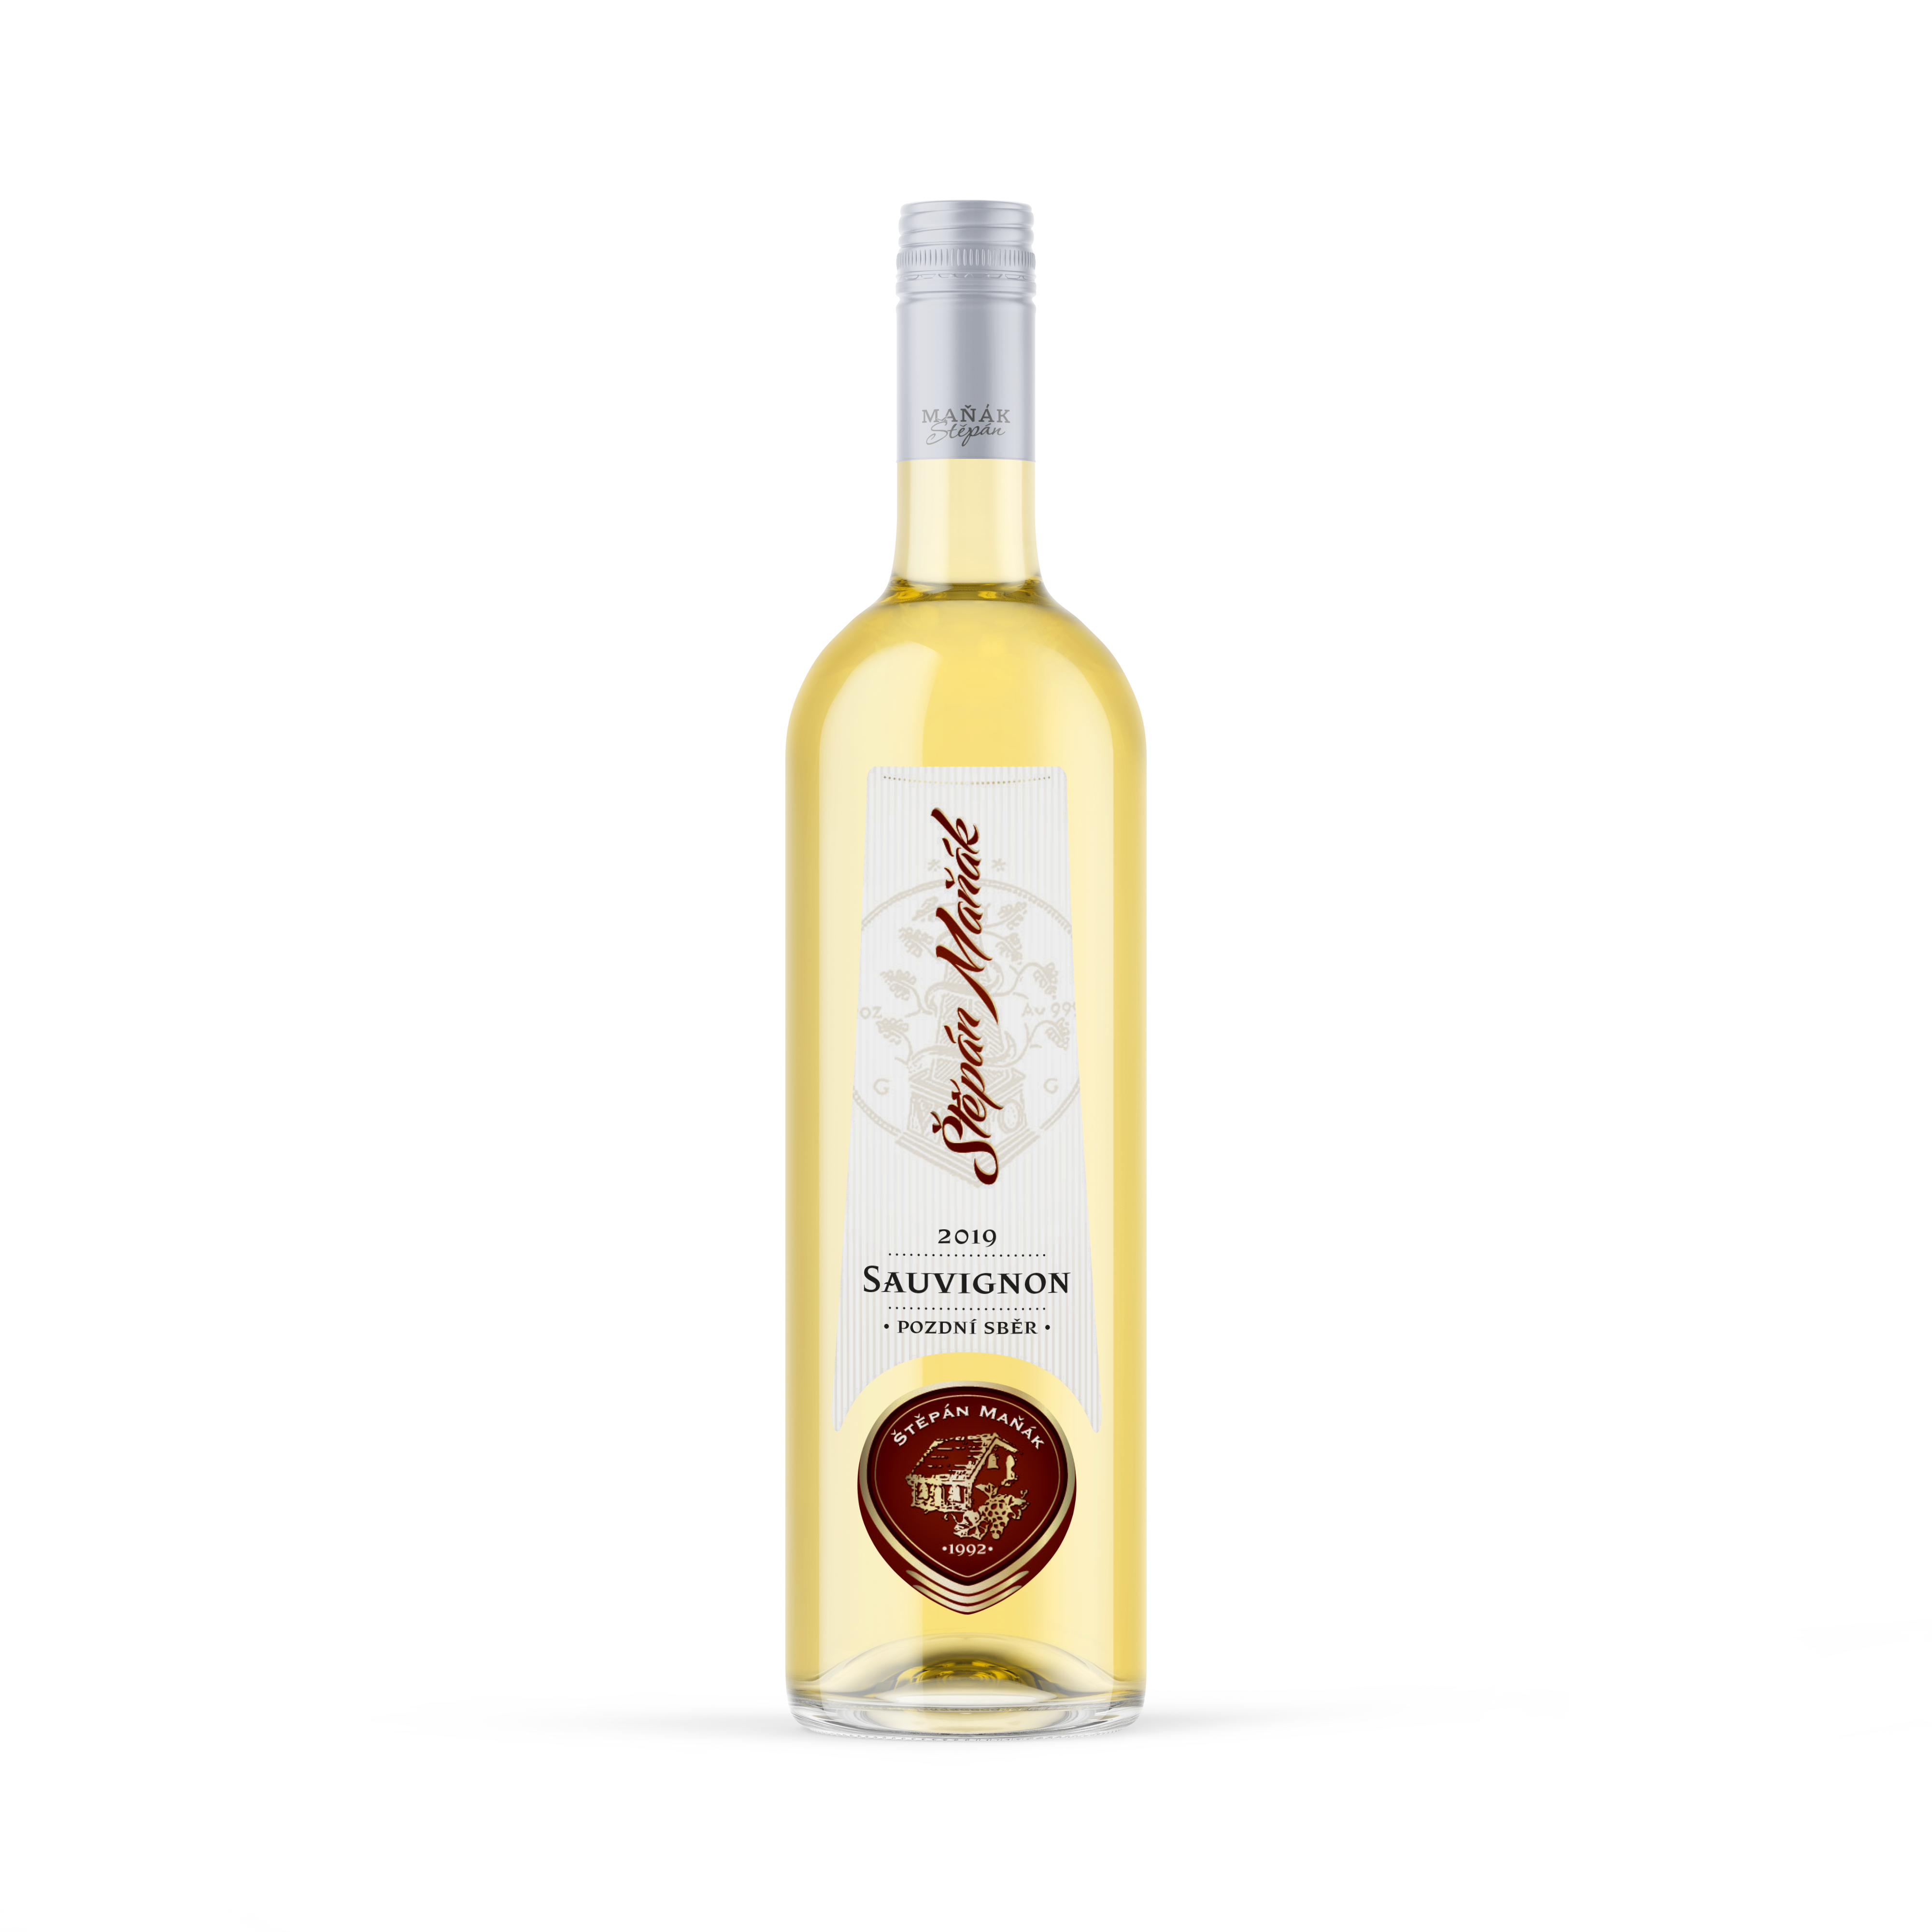 Vinnio Winery - Sauvignon 2019